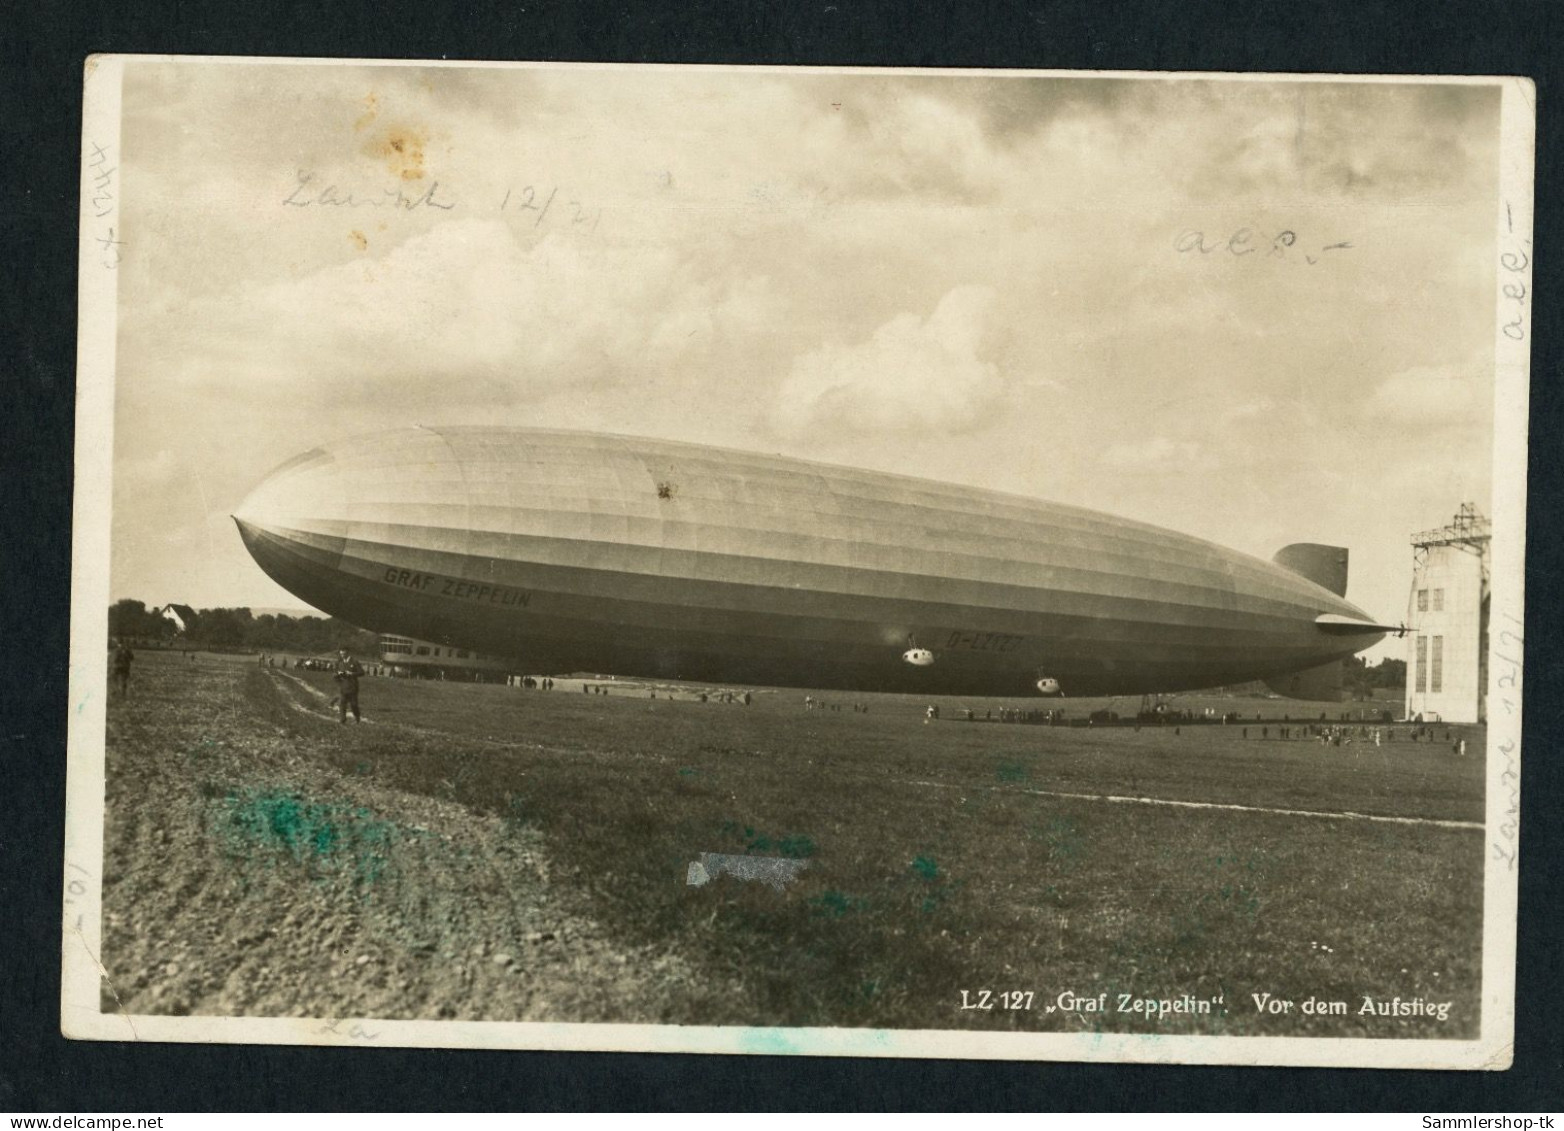 Dt. Reich Zeppelin Luftpost Südamerika Fahrt 1930 Mi. Nr. 438 Mehrfachfrankatur - Zeppeline